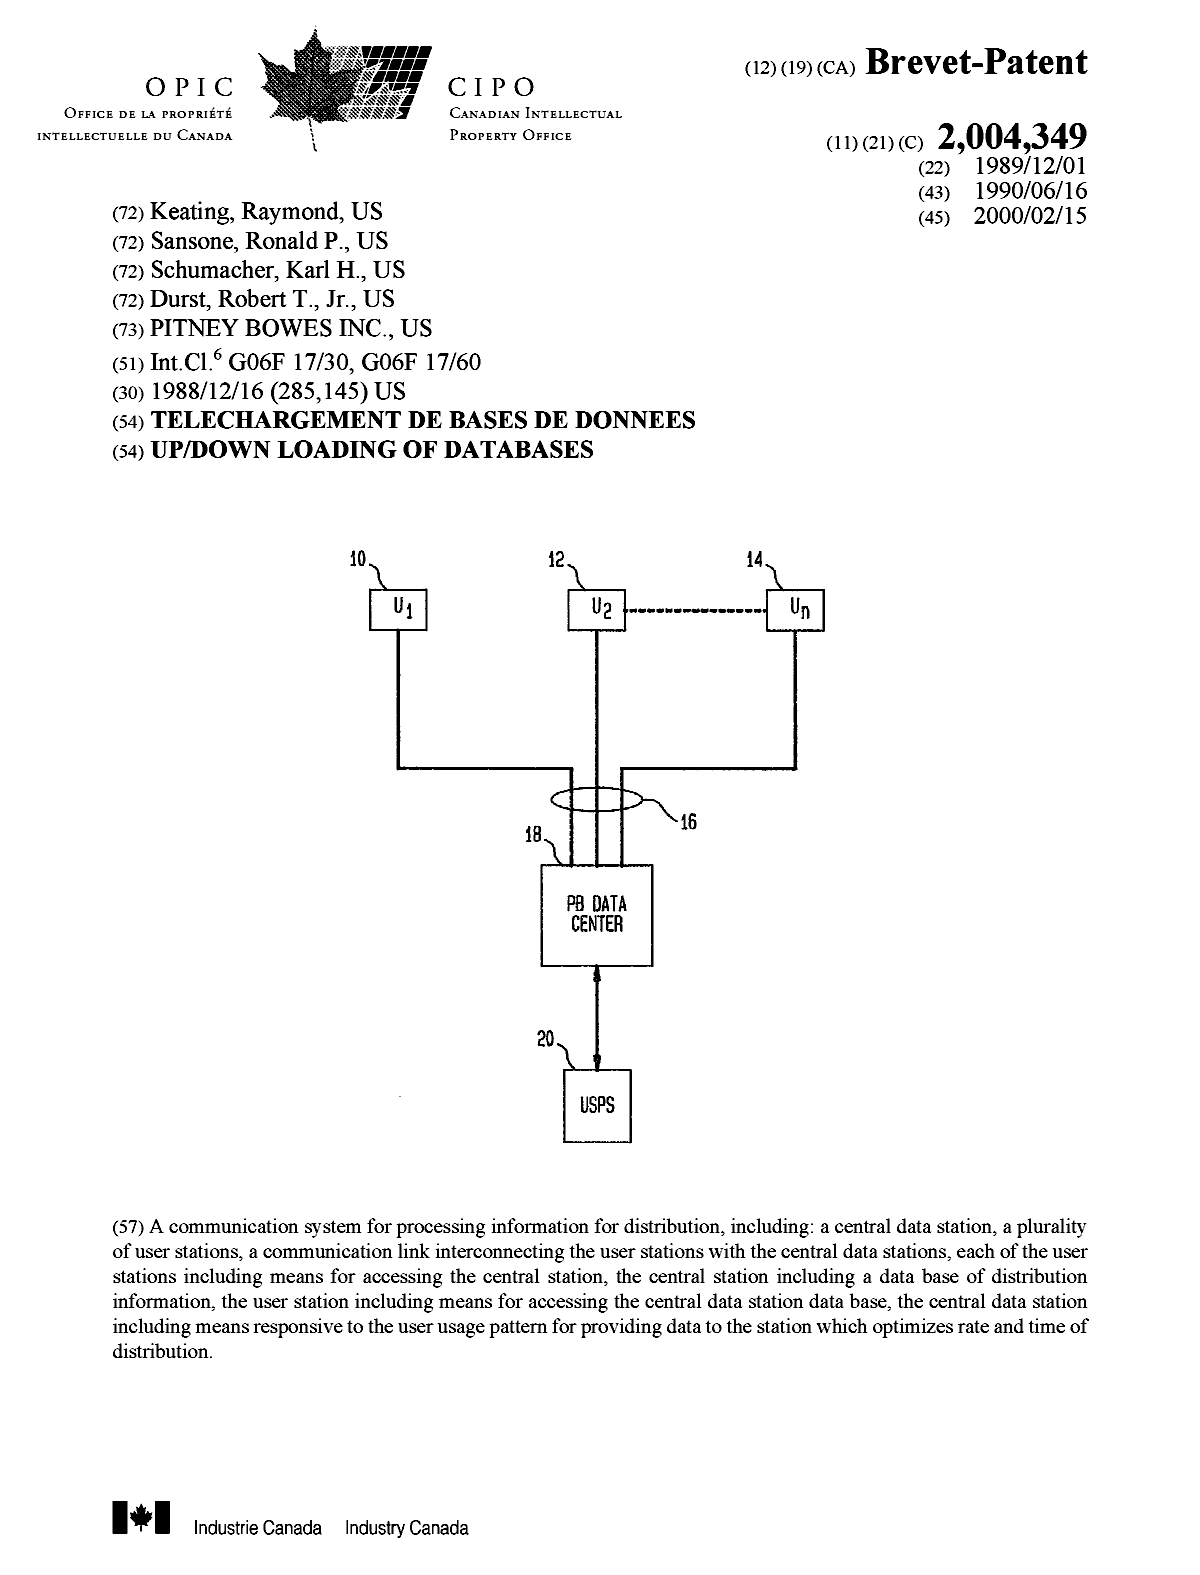 Document de brevet canadien 2004349. Page couverture 20000124. Image 1 de 1